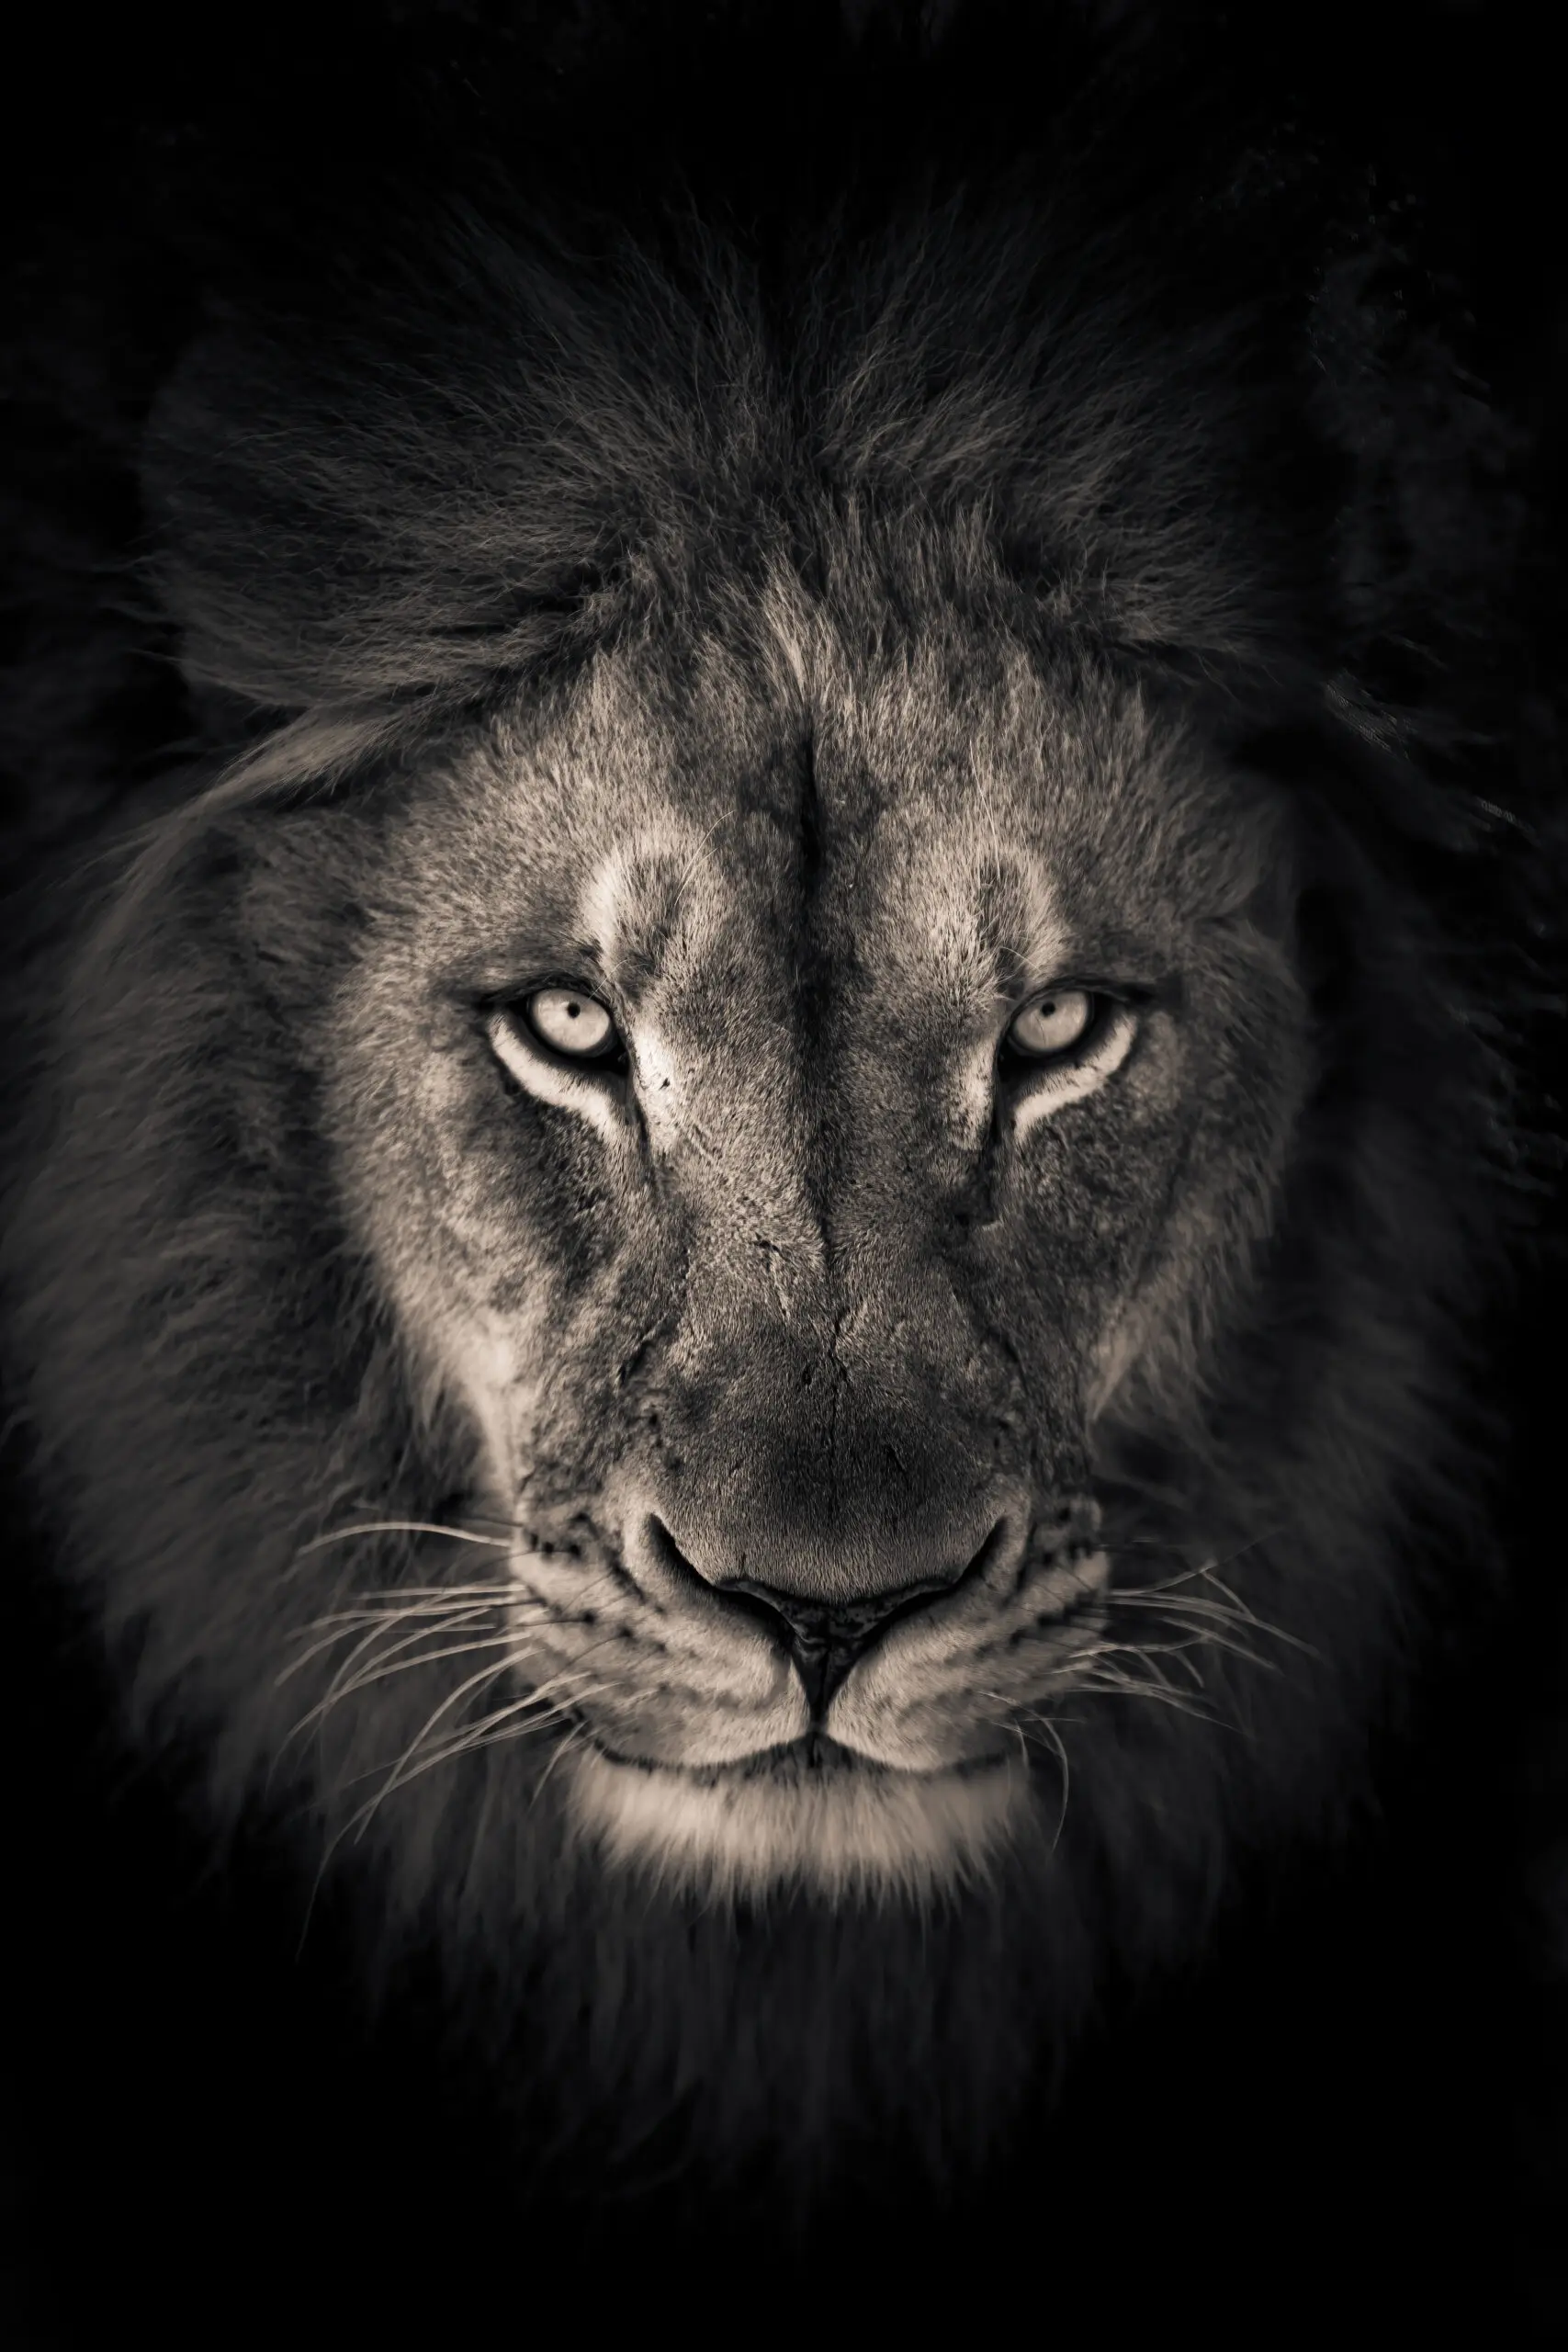 Wandbild (6343) The king by Alex Zhao,1x.com präsentiert: Tiere,Natur,Wildtiere,Aus Afrika